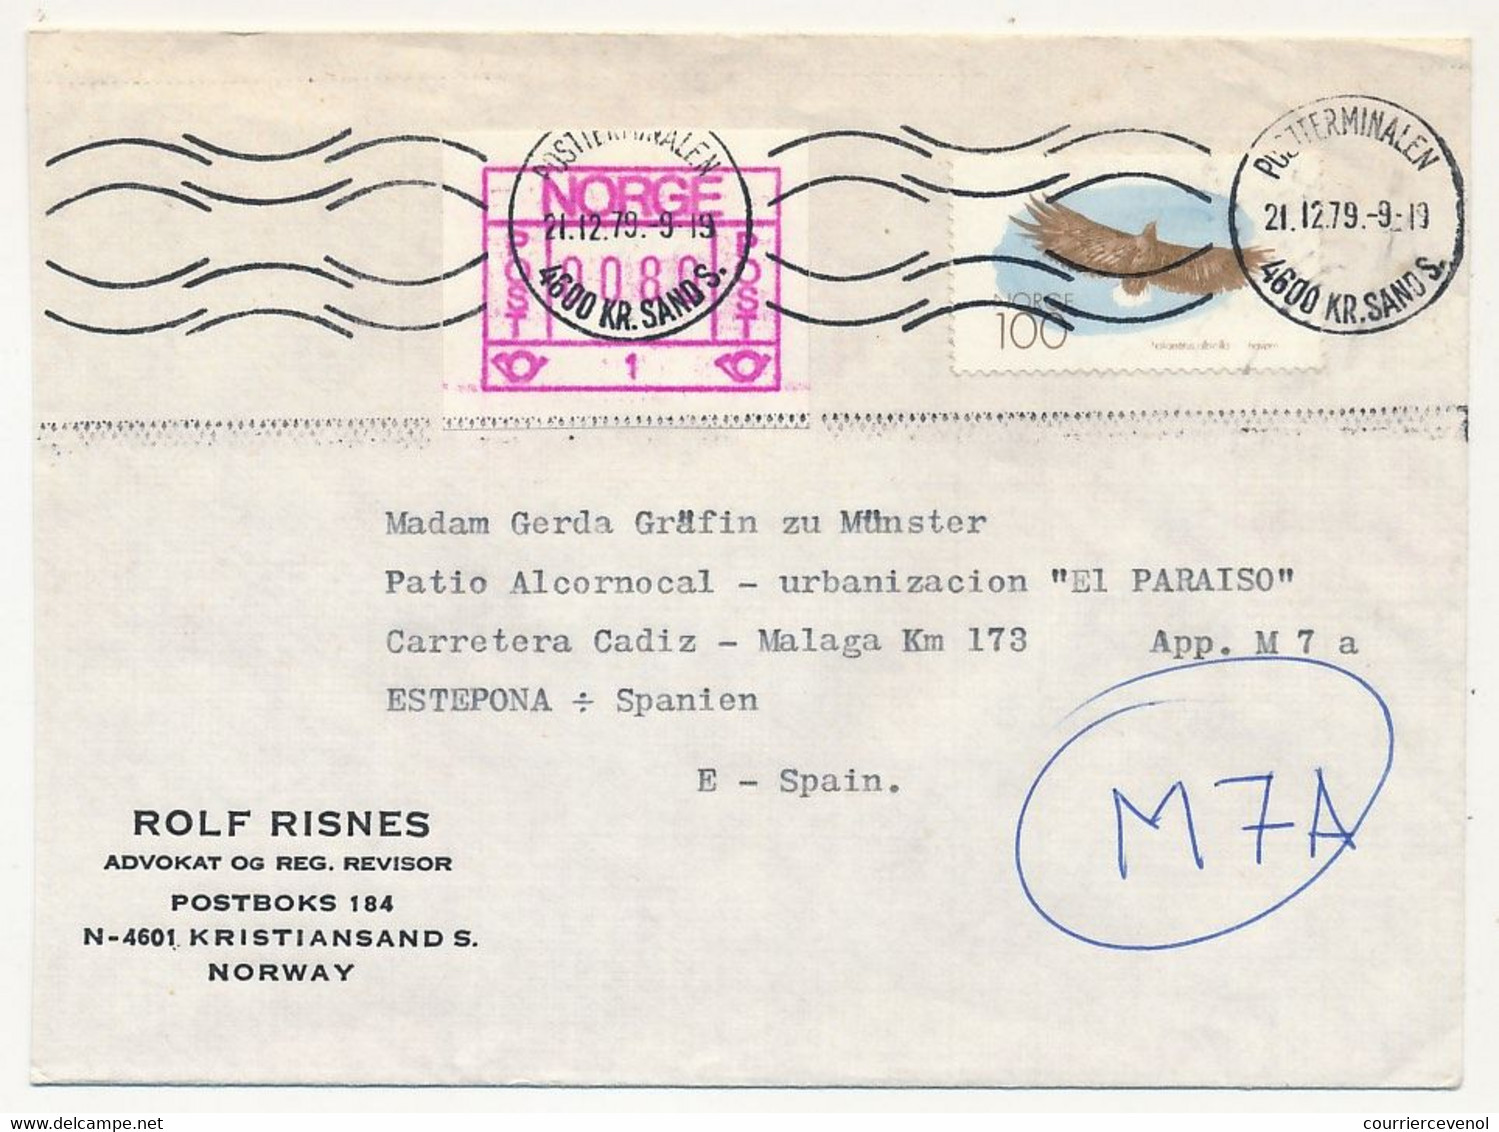 NORVEGE - Lot 9 enveloppes diverses, affranchissements composés avec étiquette ATM, 1981